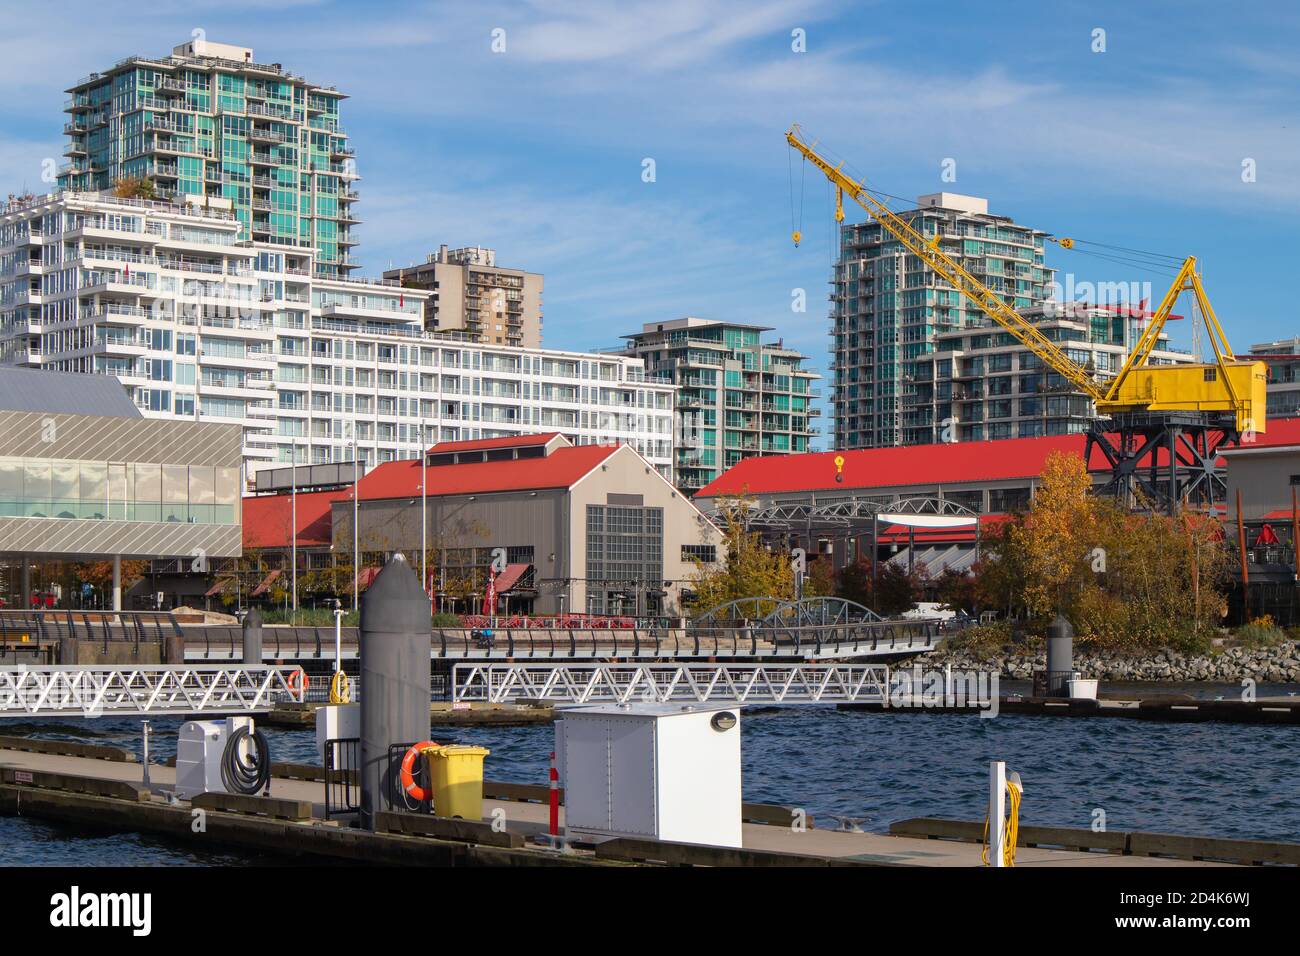 Hafenpromenade mit Hafenblick. Moderne Wohnhäuser mit großem gelben Kran. North Vancouver (British Columbia, Kanada) Quay. Stockfoto